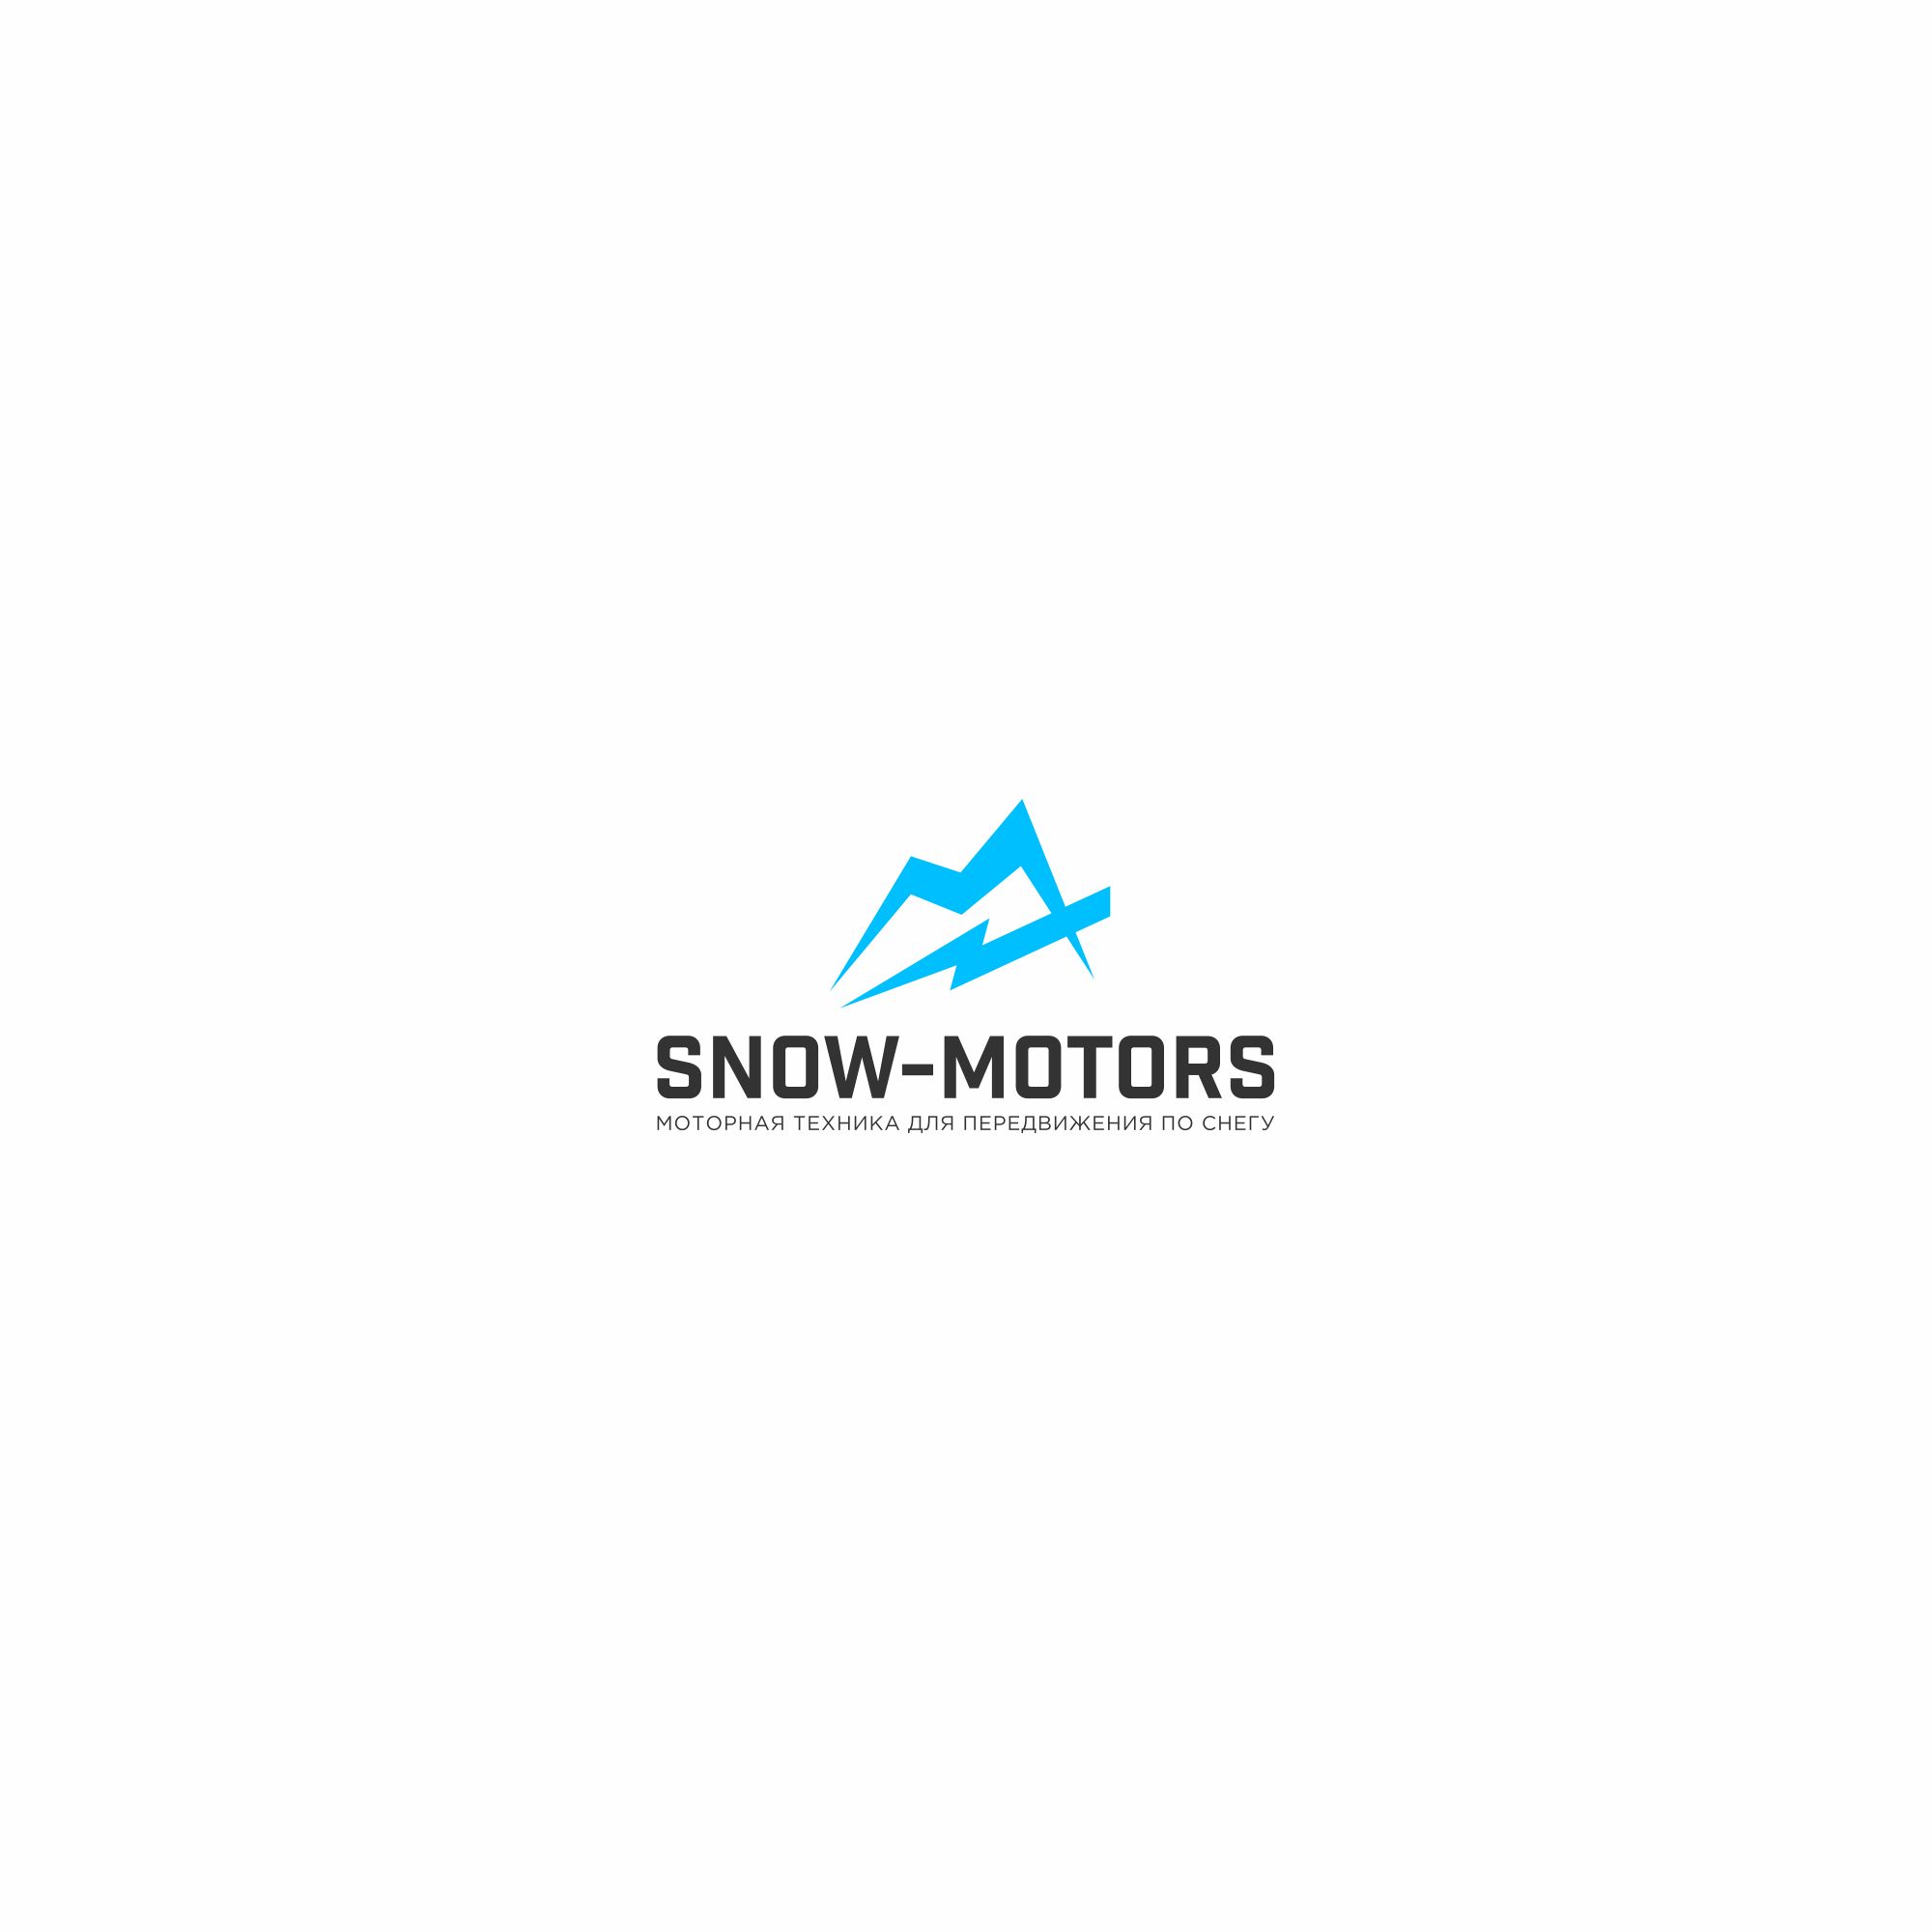 Логотип для snow-motors - дизайнер ironbrands